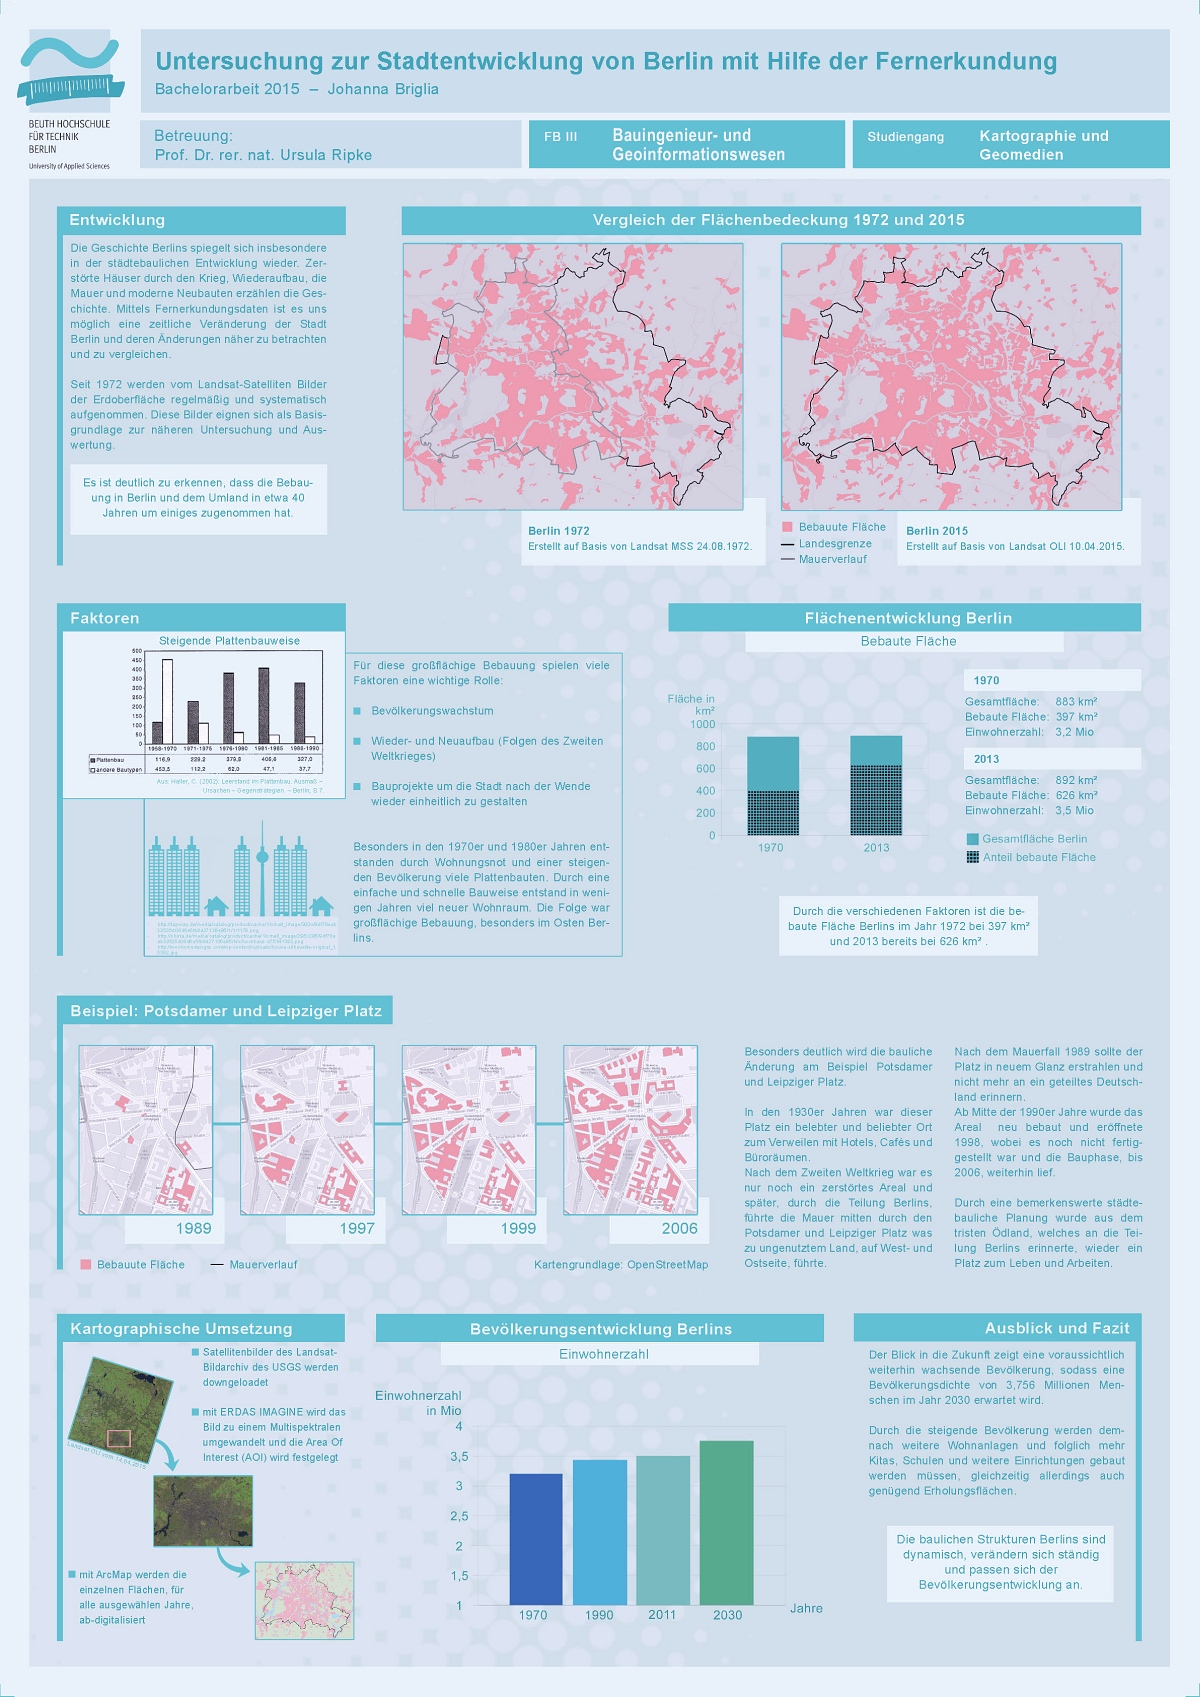 Poster: Untersuchung zur Stadtentwicklung von Berlin mit Hilfe der Fernerkundung